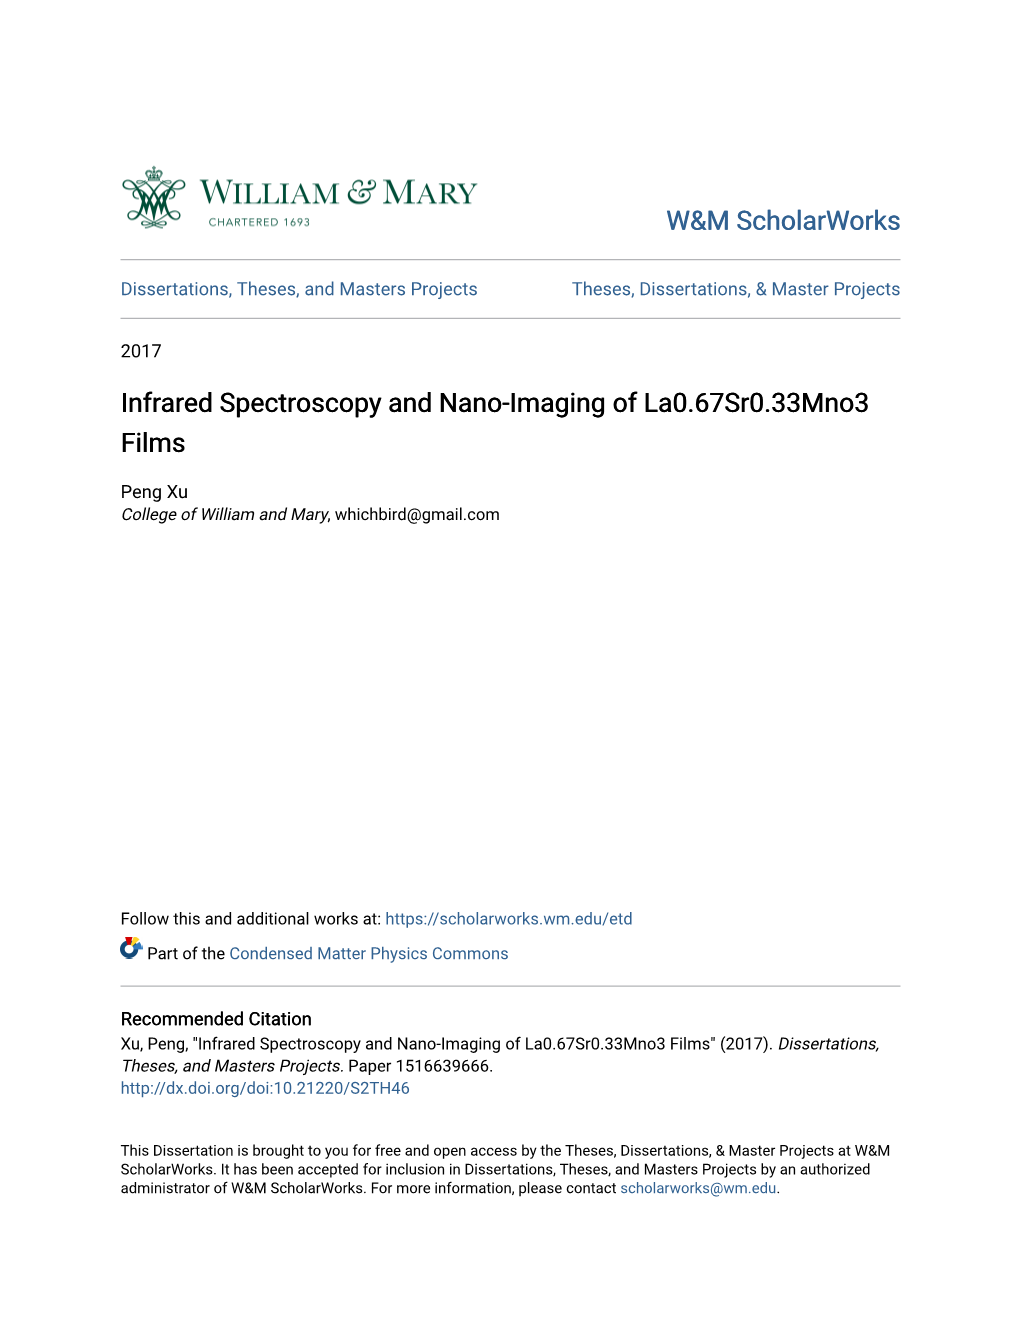 Infrared Spectroscopy and Nano-Imaging of La0.67Sr0.33Mno3 Films